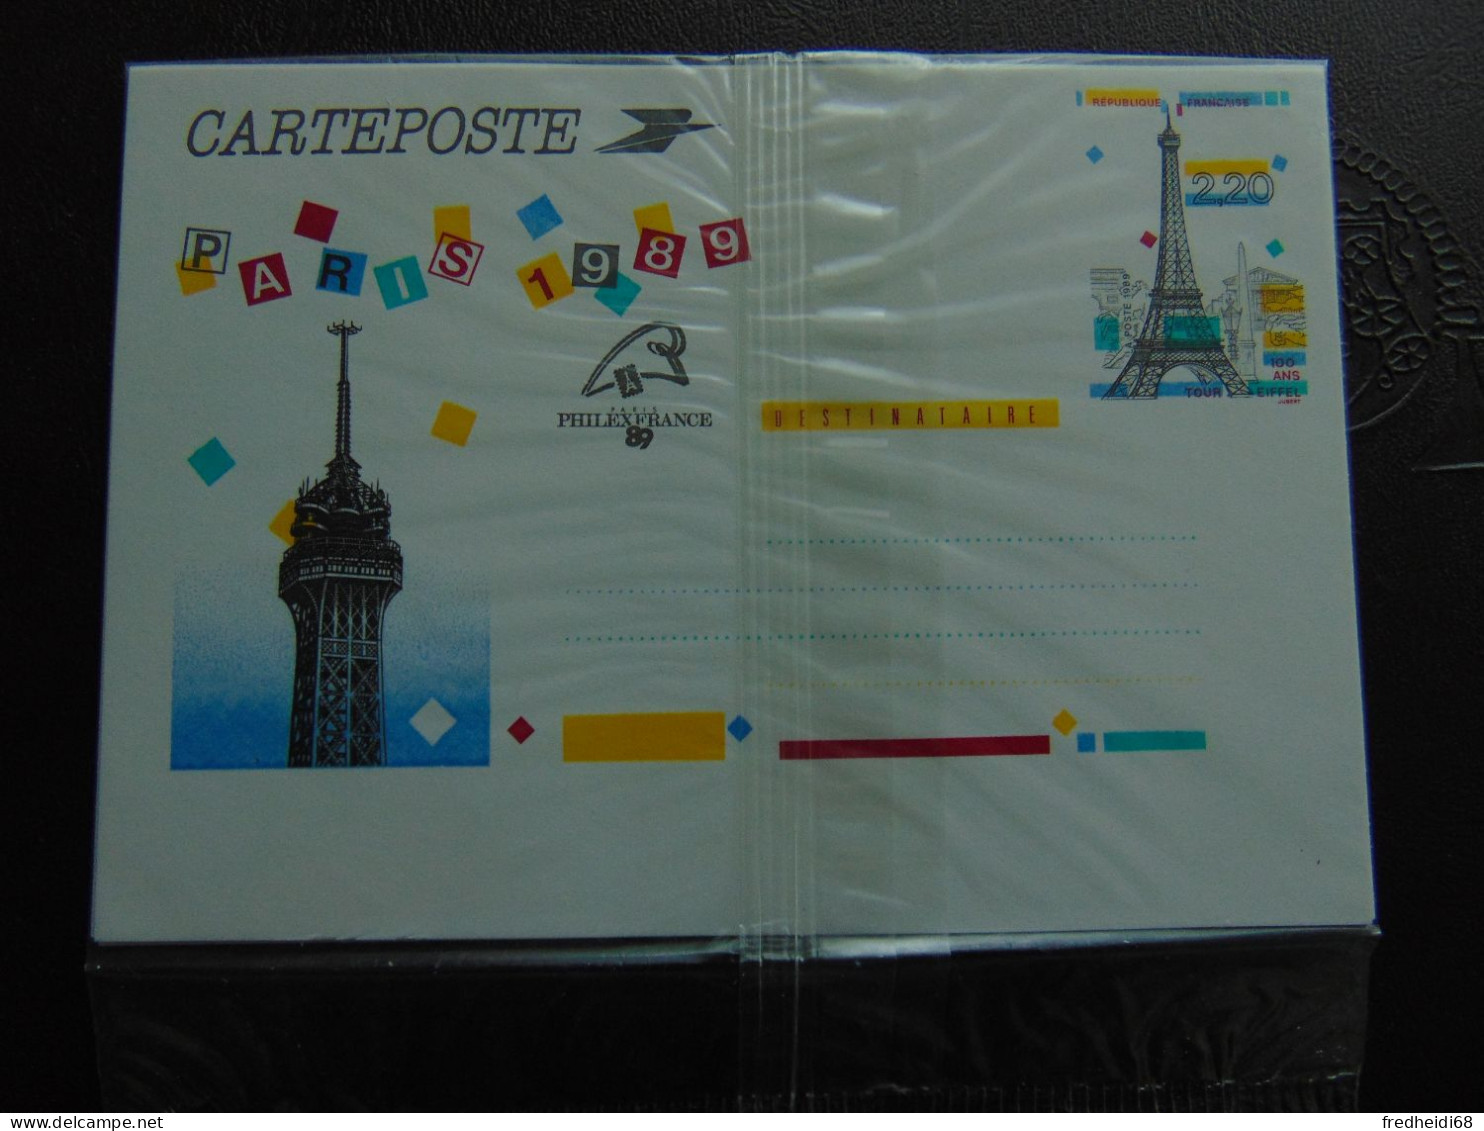 Très Bel Ensemble Des 5 Cartes "Panoramas De Paris" N°. 2579-CP1 à 2583-CP1 Dans Leur Blister D'origine - Standard Postcards & Stamped On Demand (before 1995)